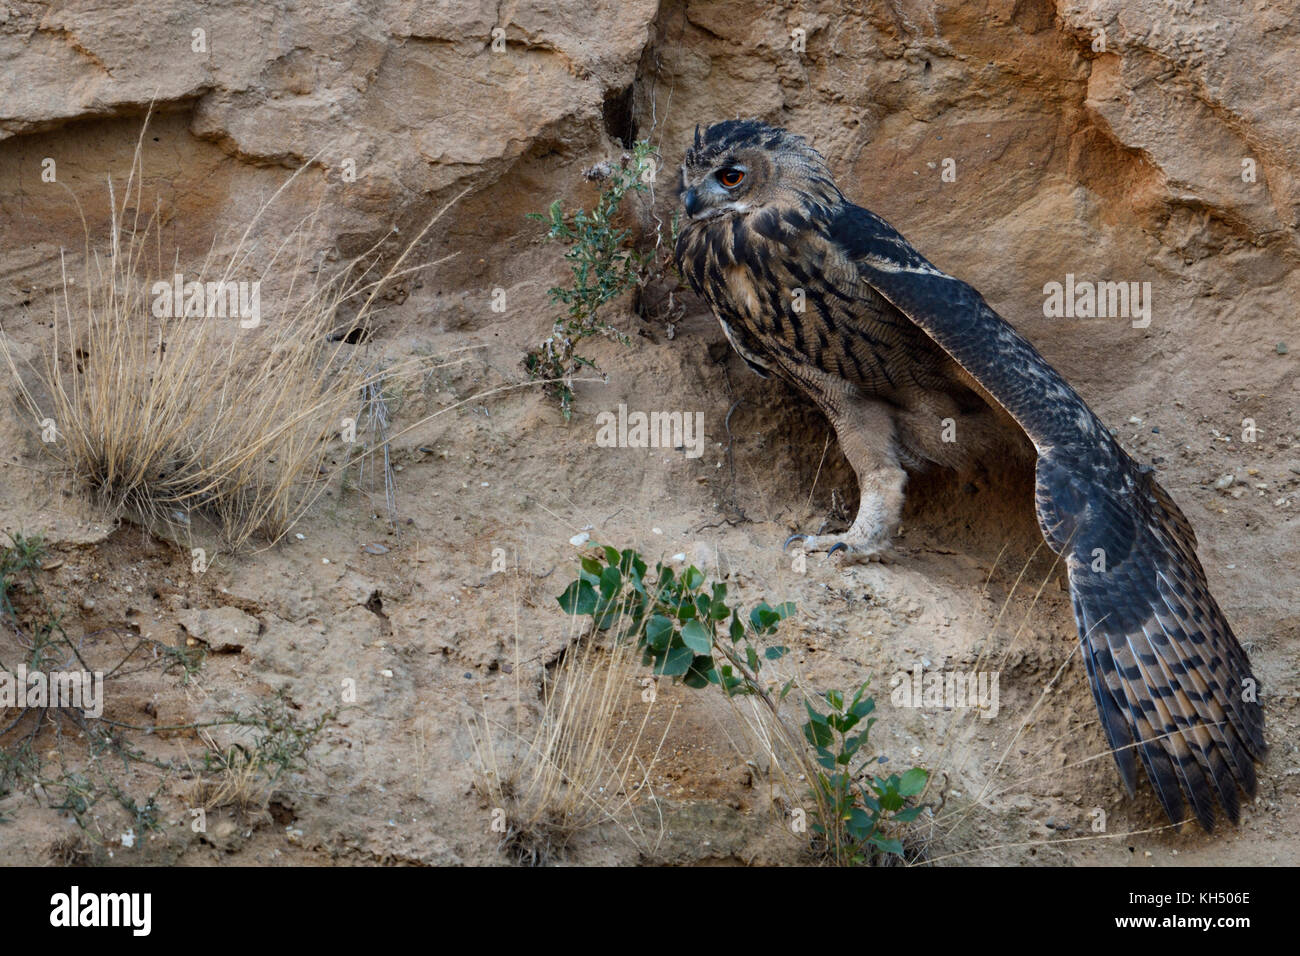 Grand / owl Bubo bubo europaeischer uhu ( ), jeune oiseau, assise dans une pente raide d'une carrière de sable, qui s'étend ses ailes, de la faune, de l'Europe. Banque D'Images